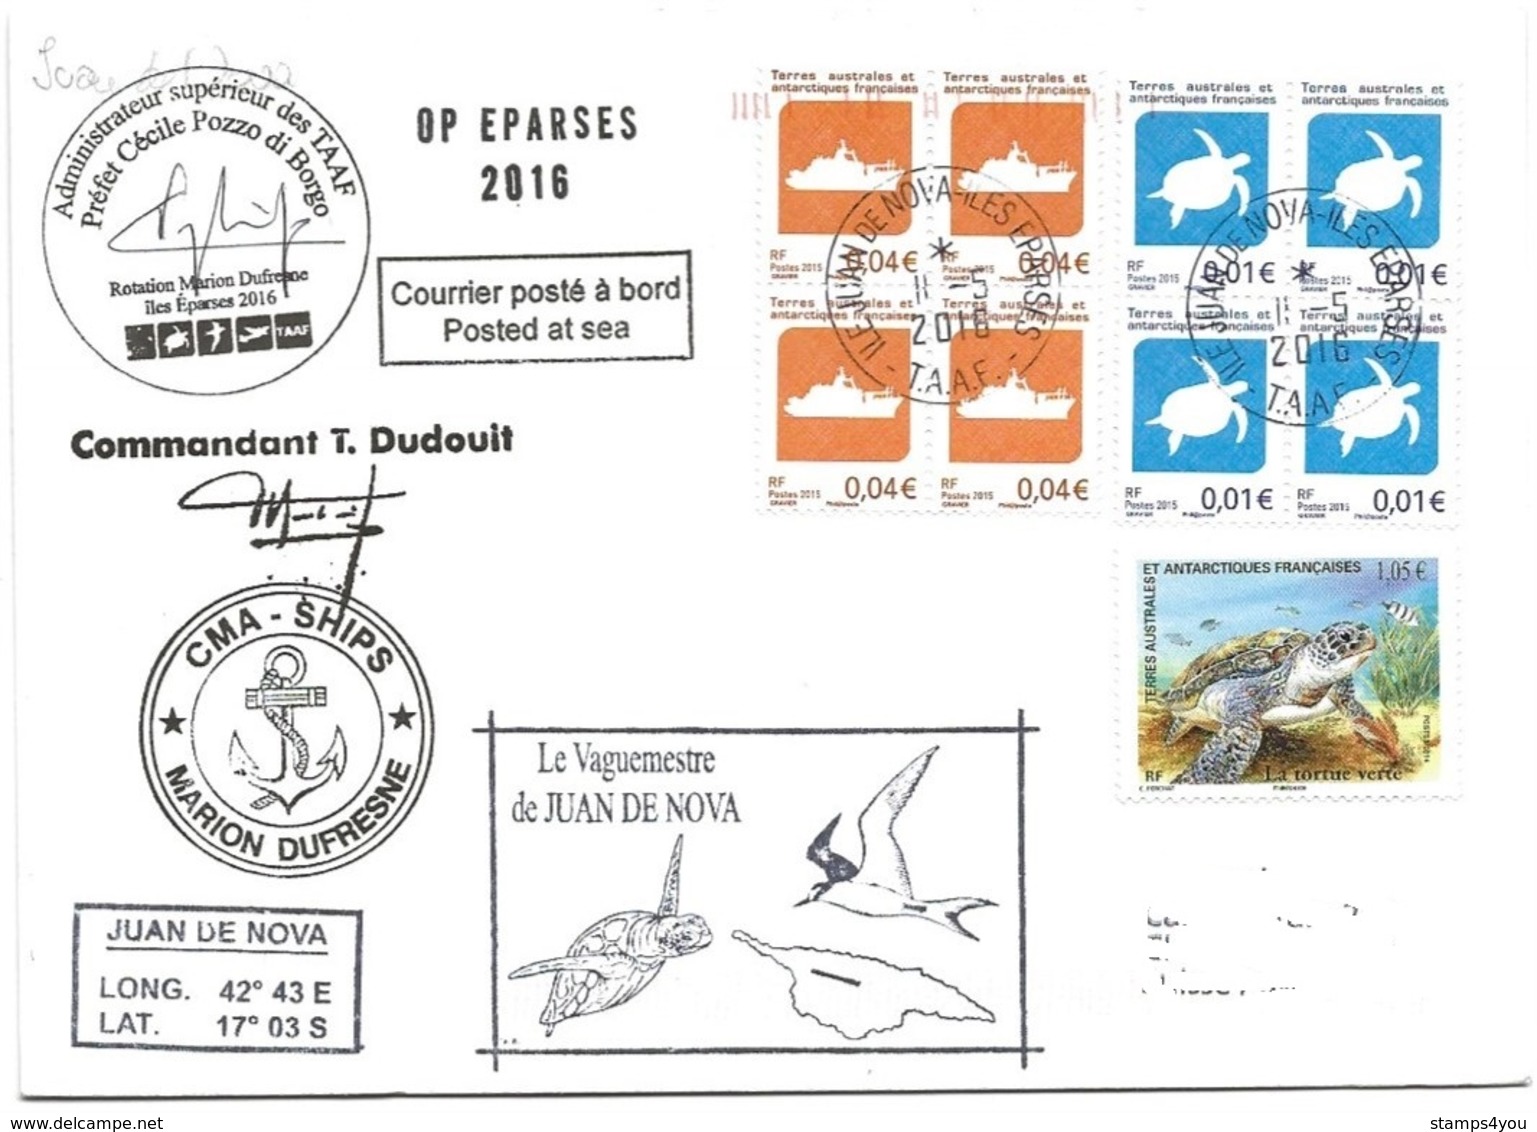 229 - 20 - Enveloppe Navire Marion Dufresne - Escale Ile Juan De Noval Iles Eparses 2016 - Divers Cachets Illustrés - Polar Ships & Icebreakers